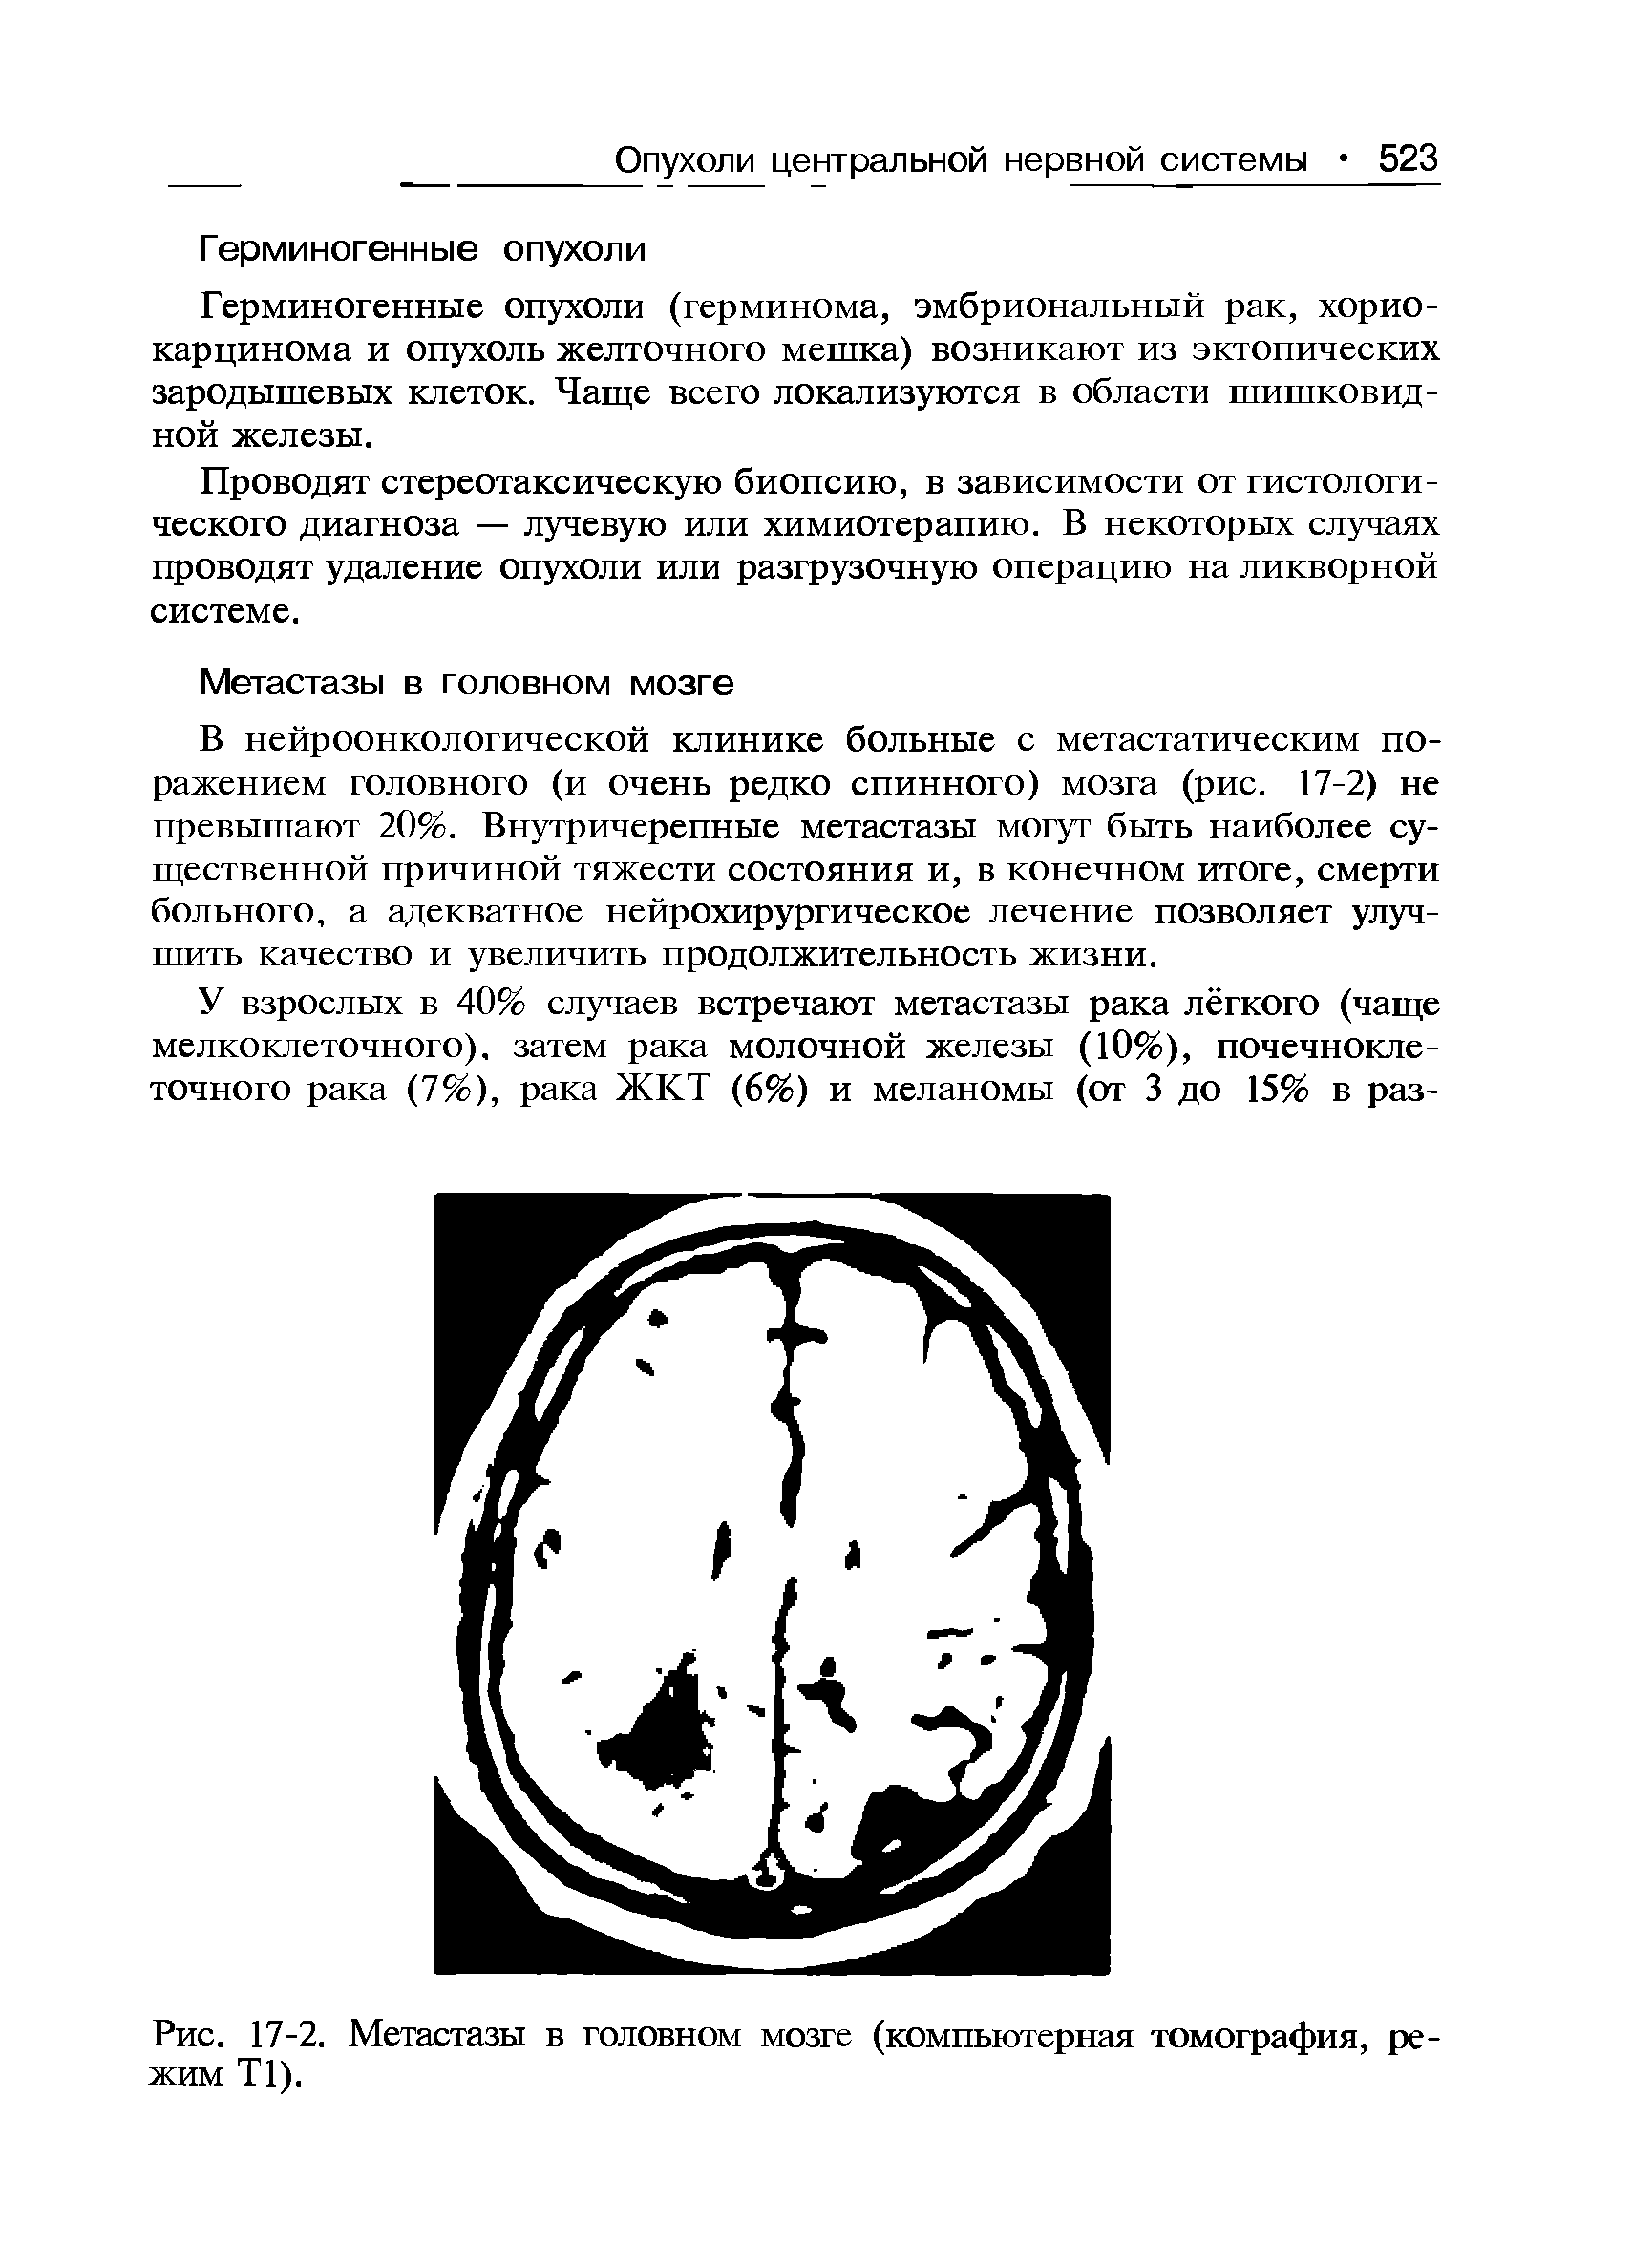 Рис. 17-2. Метастазы в головном мозге (компьютерная томография, режим Т1).